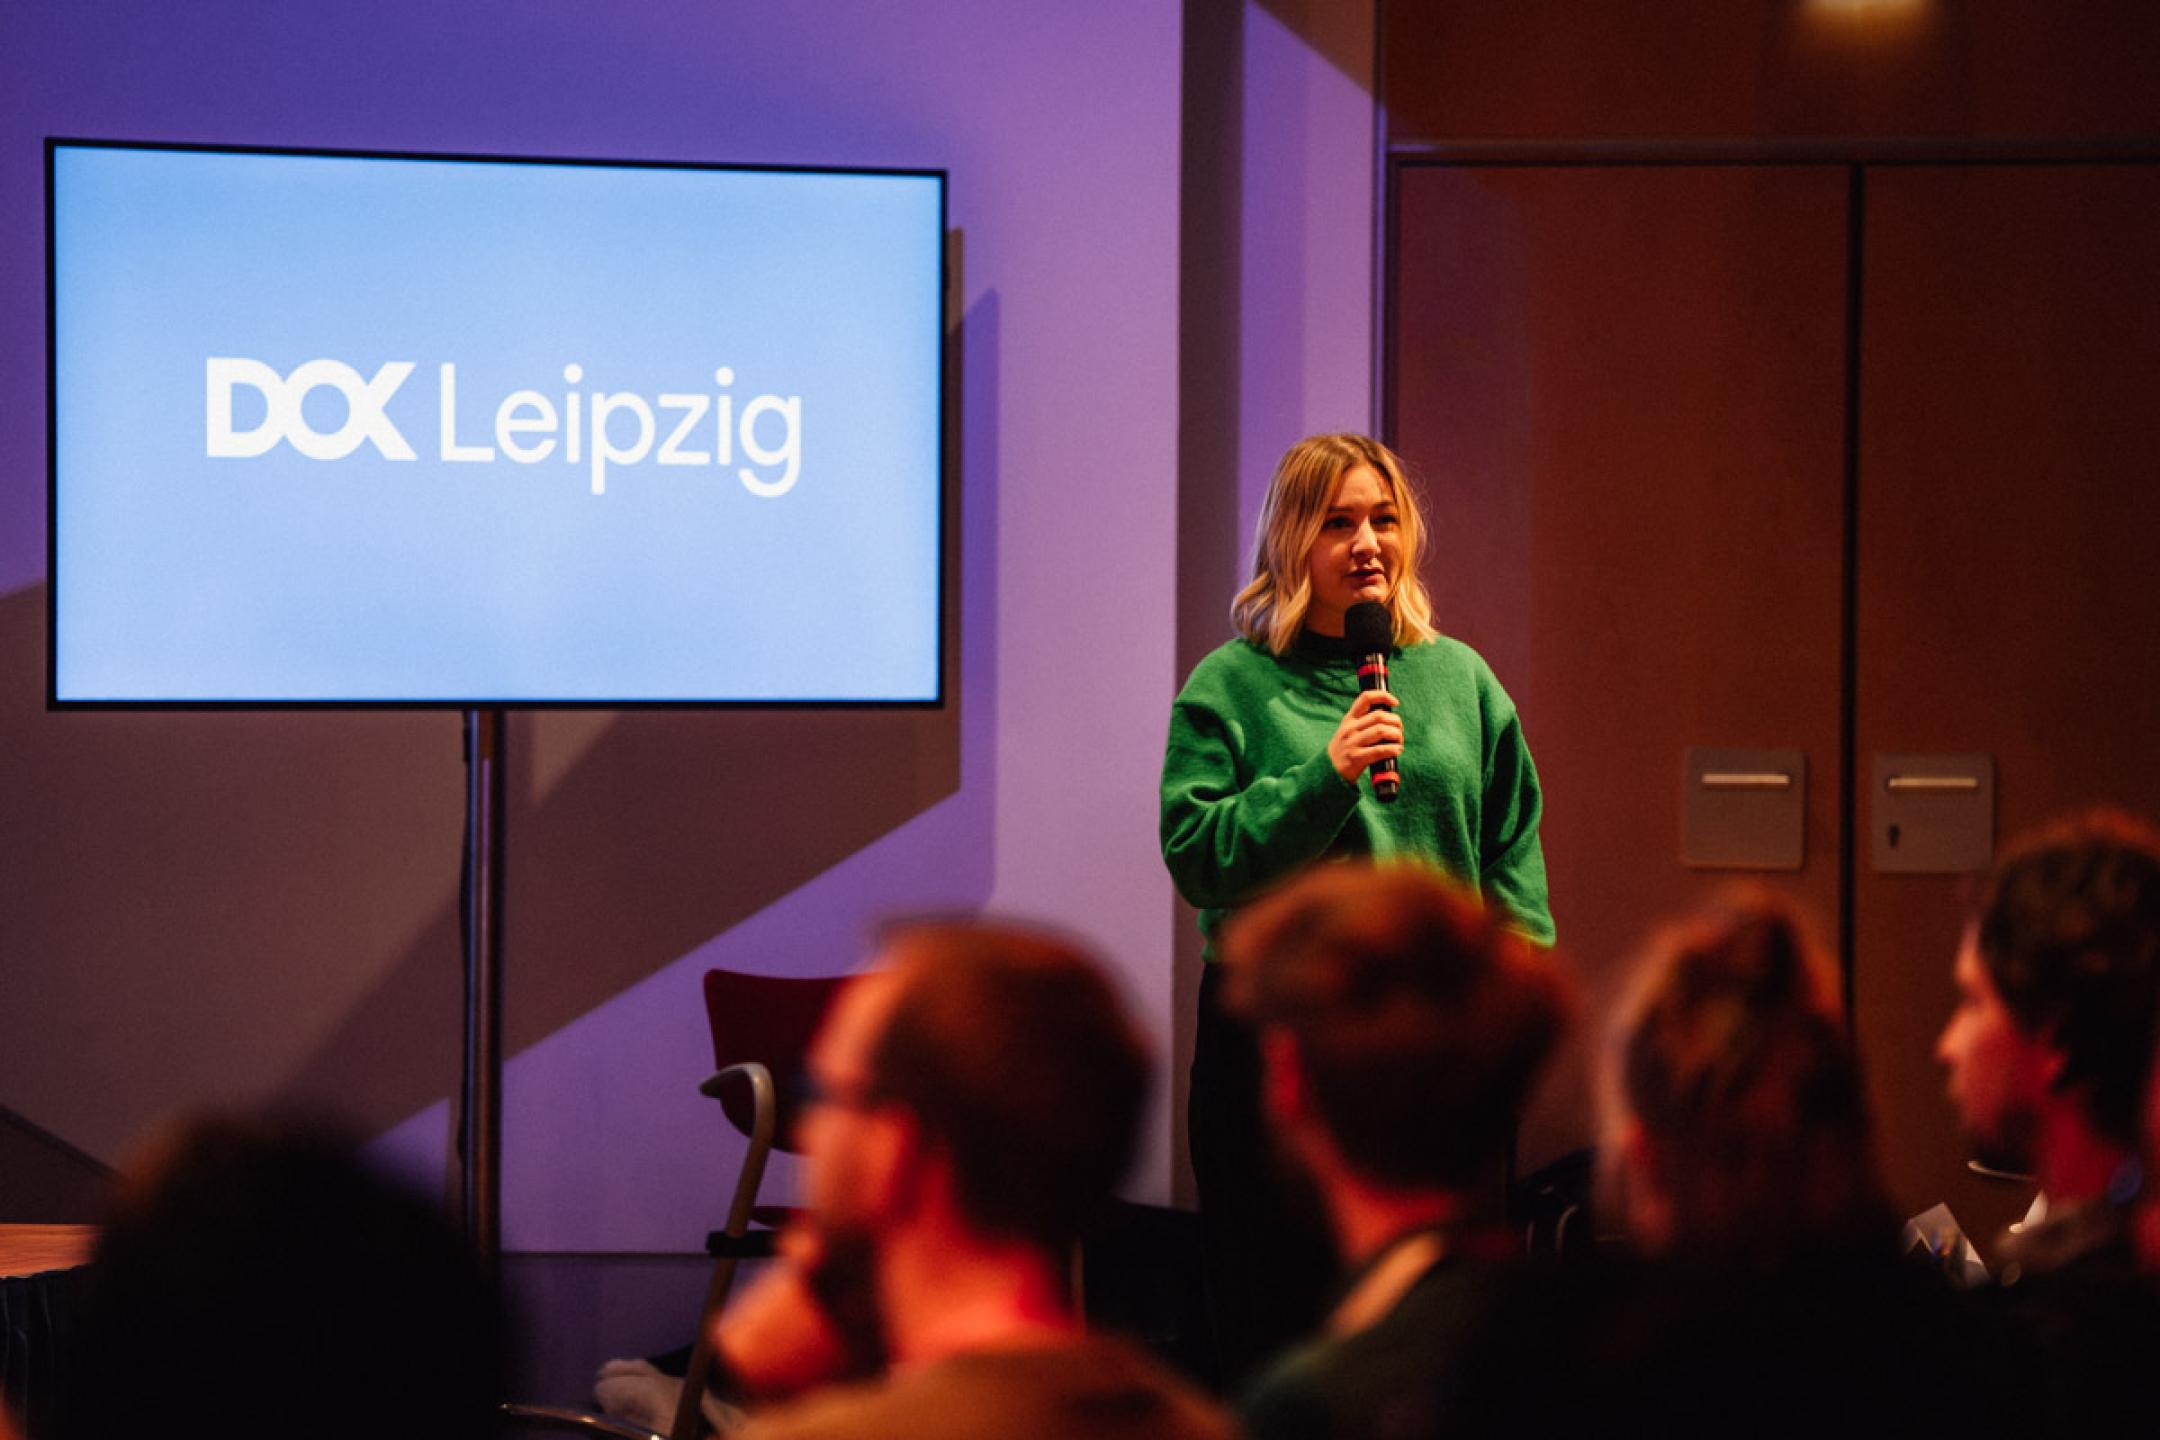 Eine Frau in einem grünen Pullover steht mit Handmikrofon vor einem blauen Bildschirm mit DOK Leipzig Logo.